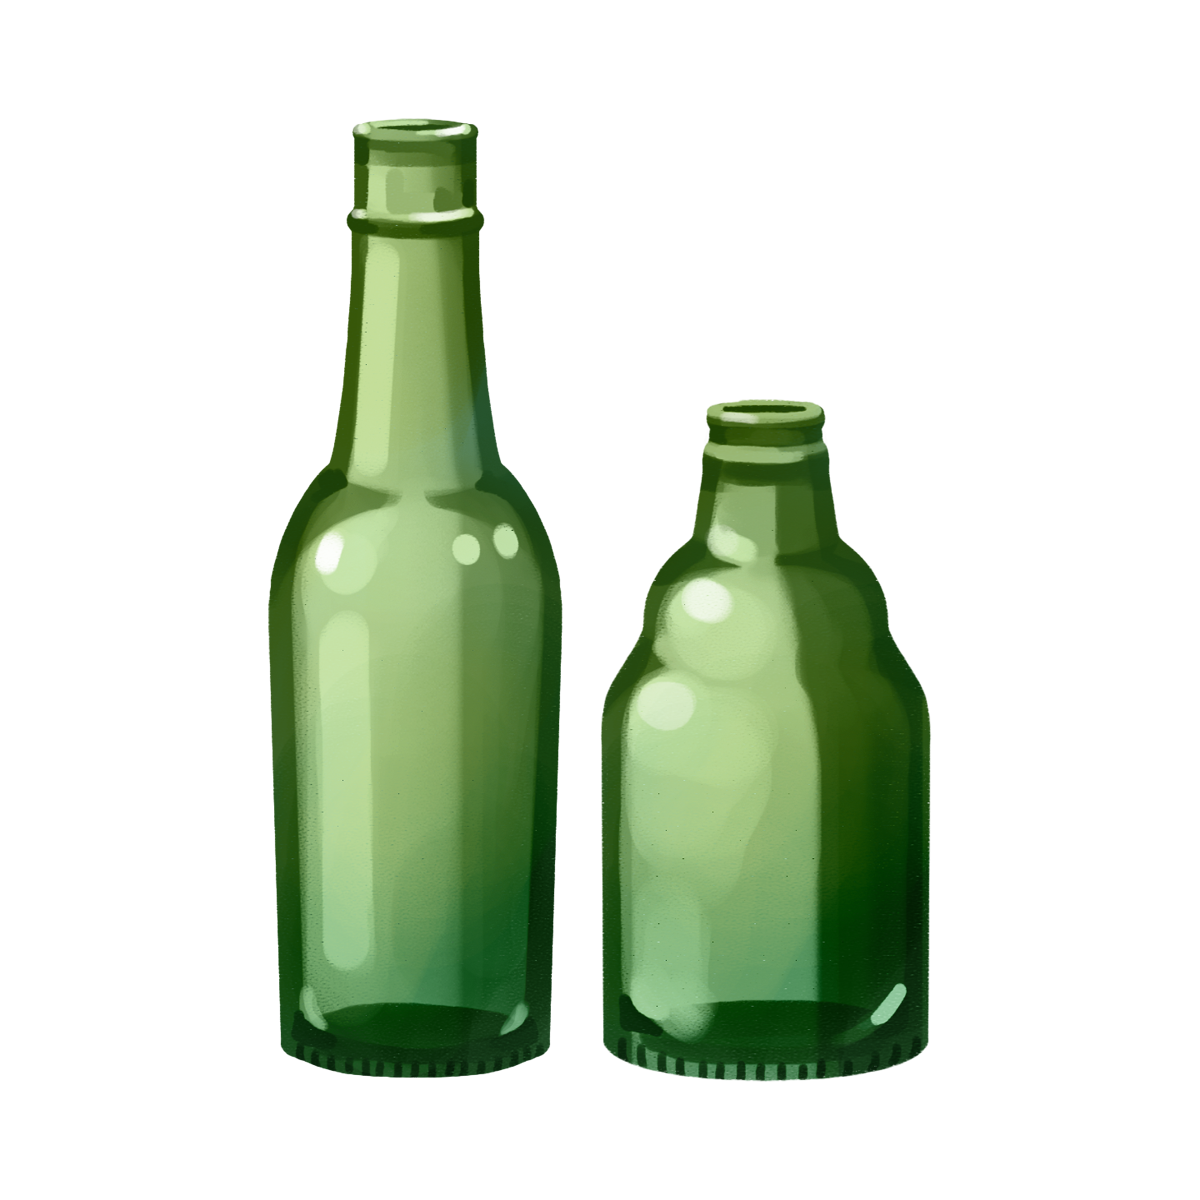 緑色の空き瓶のイラスト エコのモト